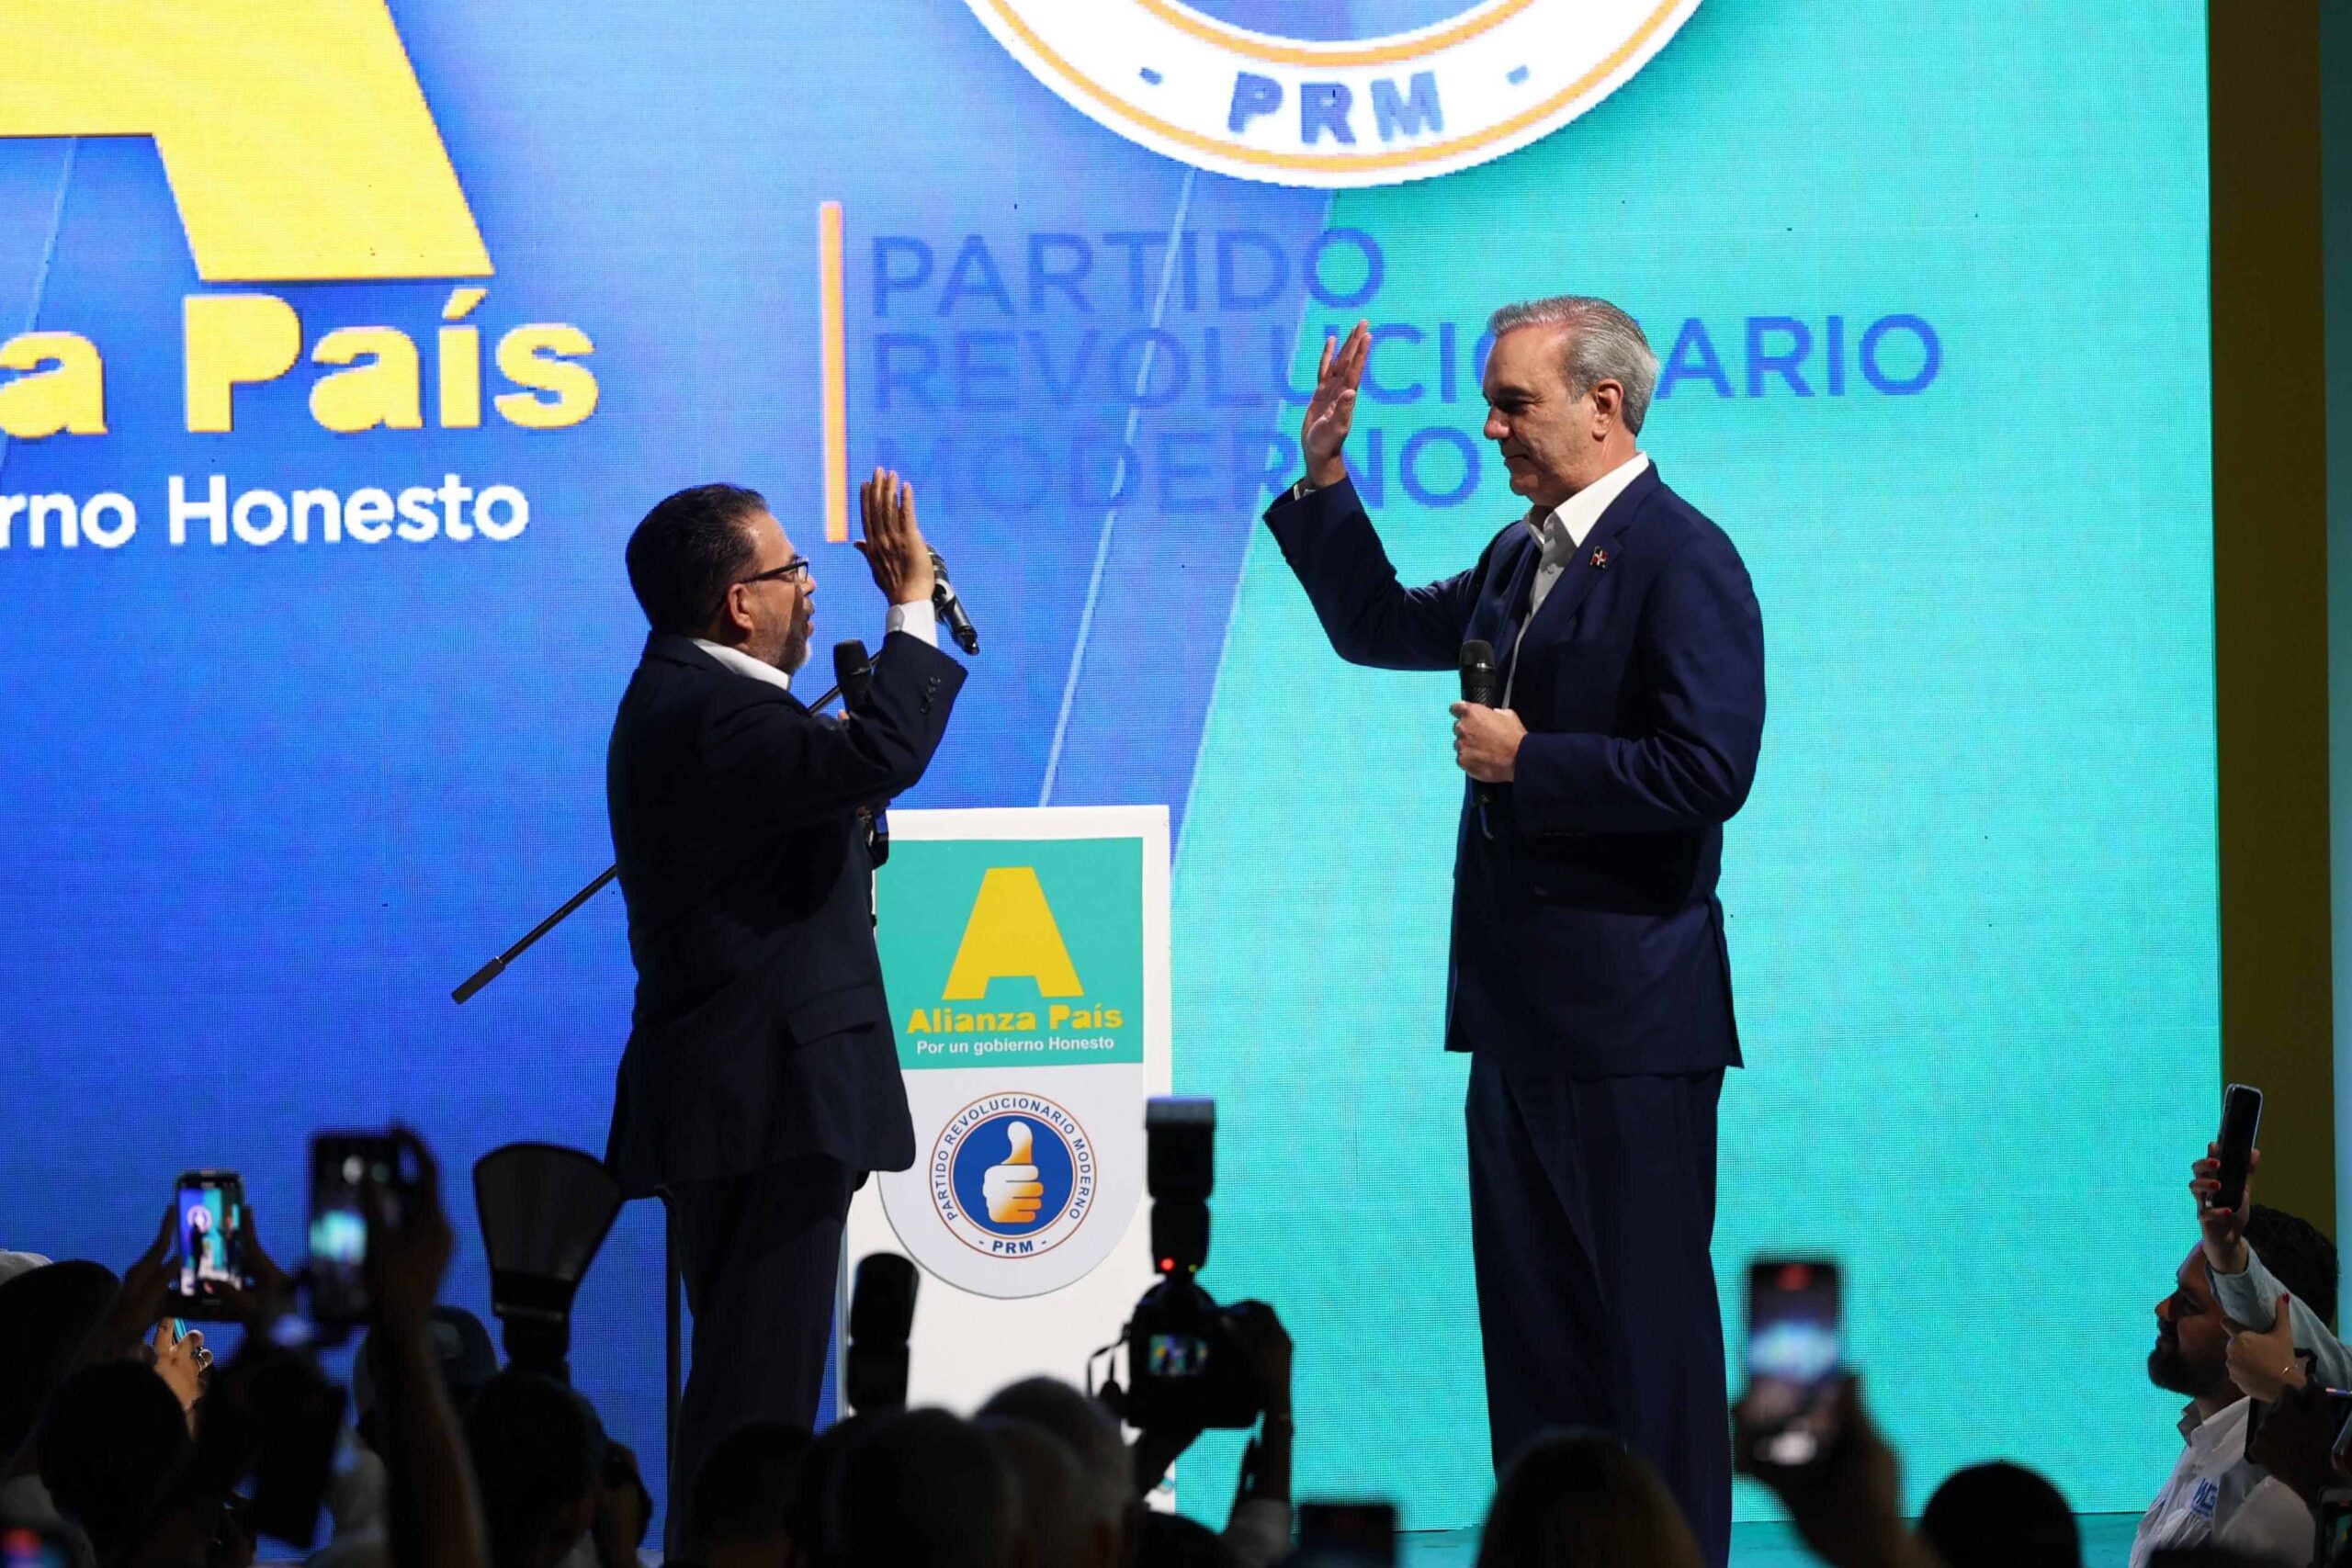 Alianza País proclama a Luis Abinader como su candidato presidencial